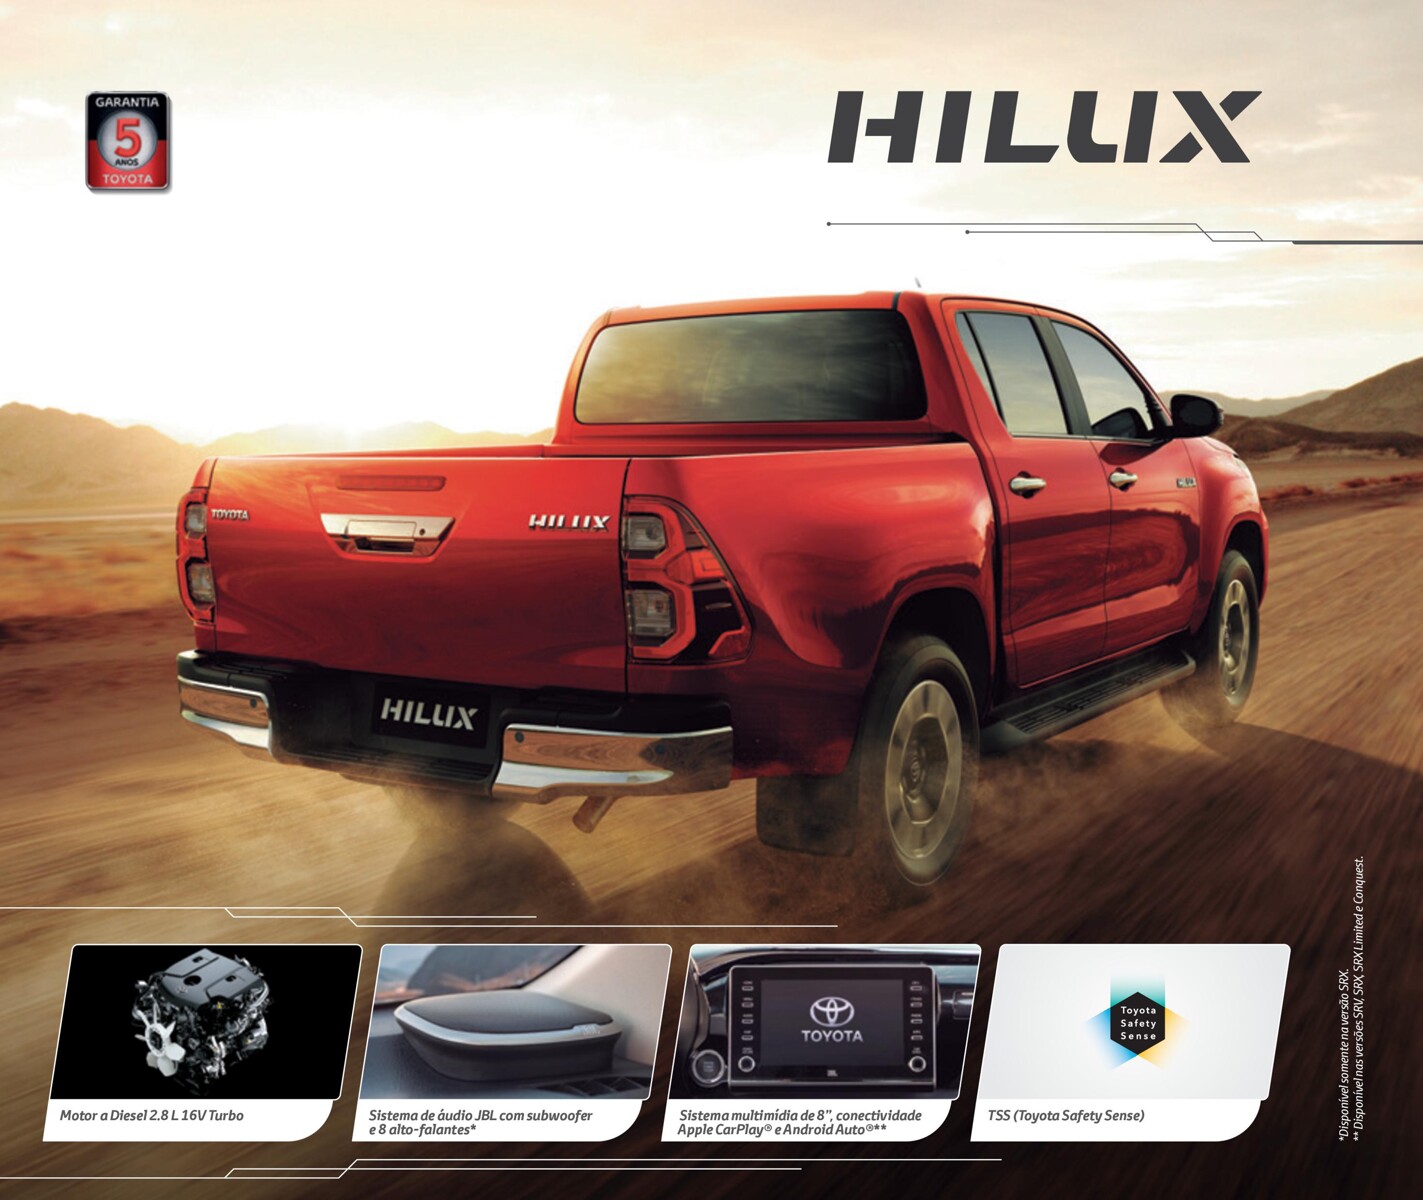 Showrooms de automóveis: Toyota Hilux com motor a Diesel 2.8L e sistema de áudio JBL